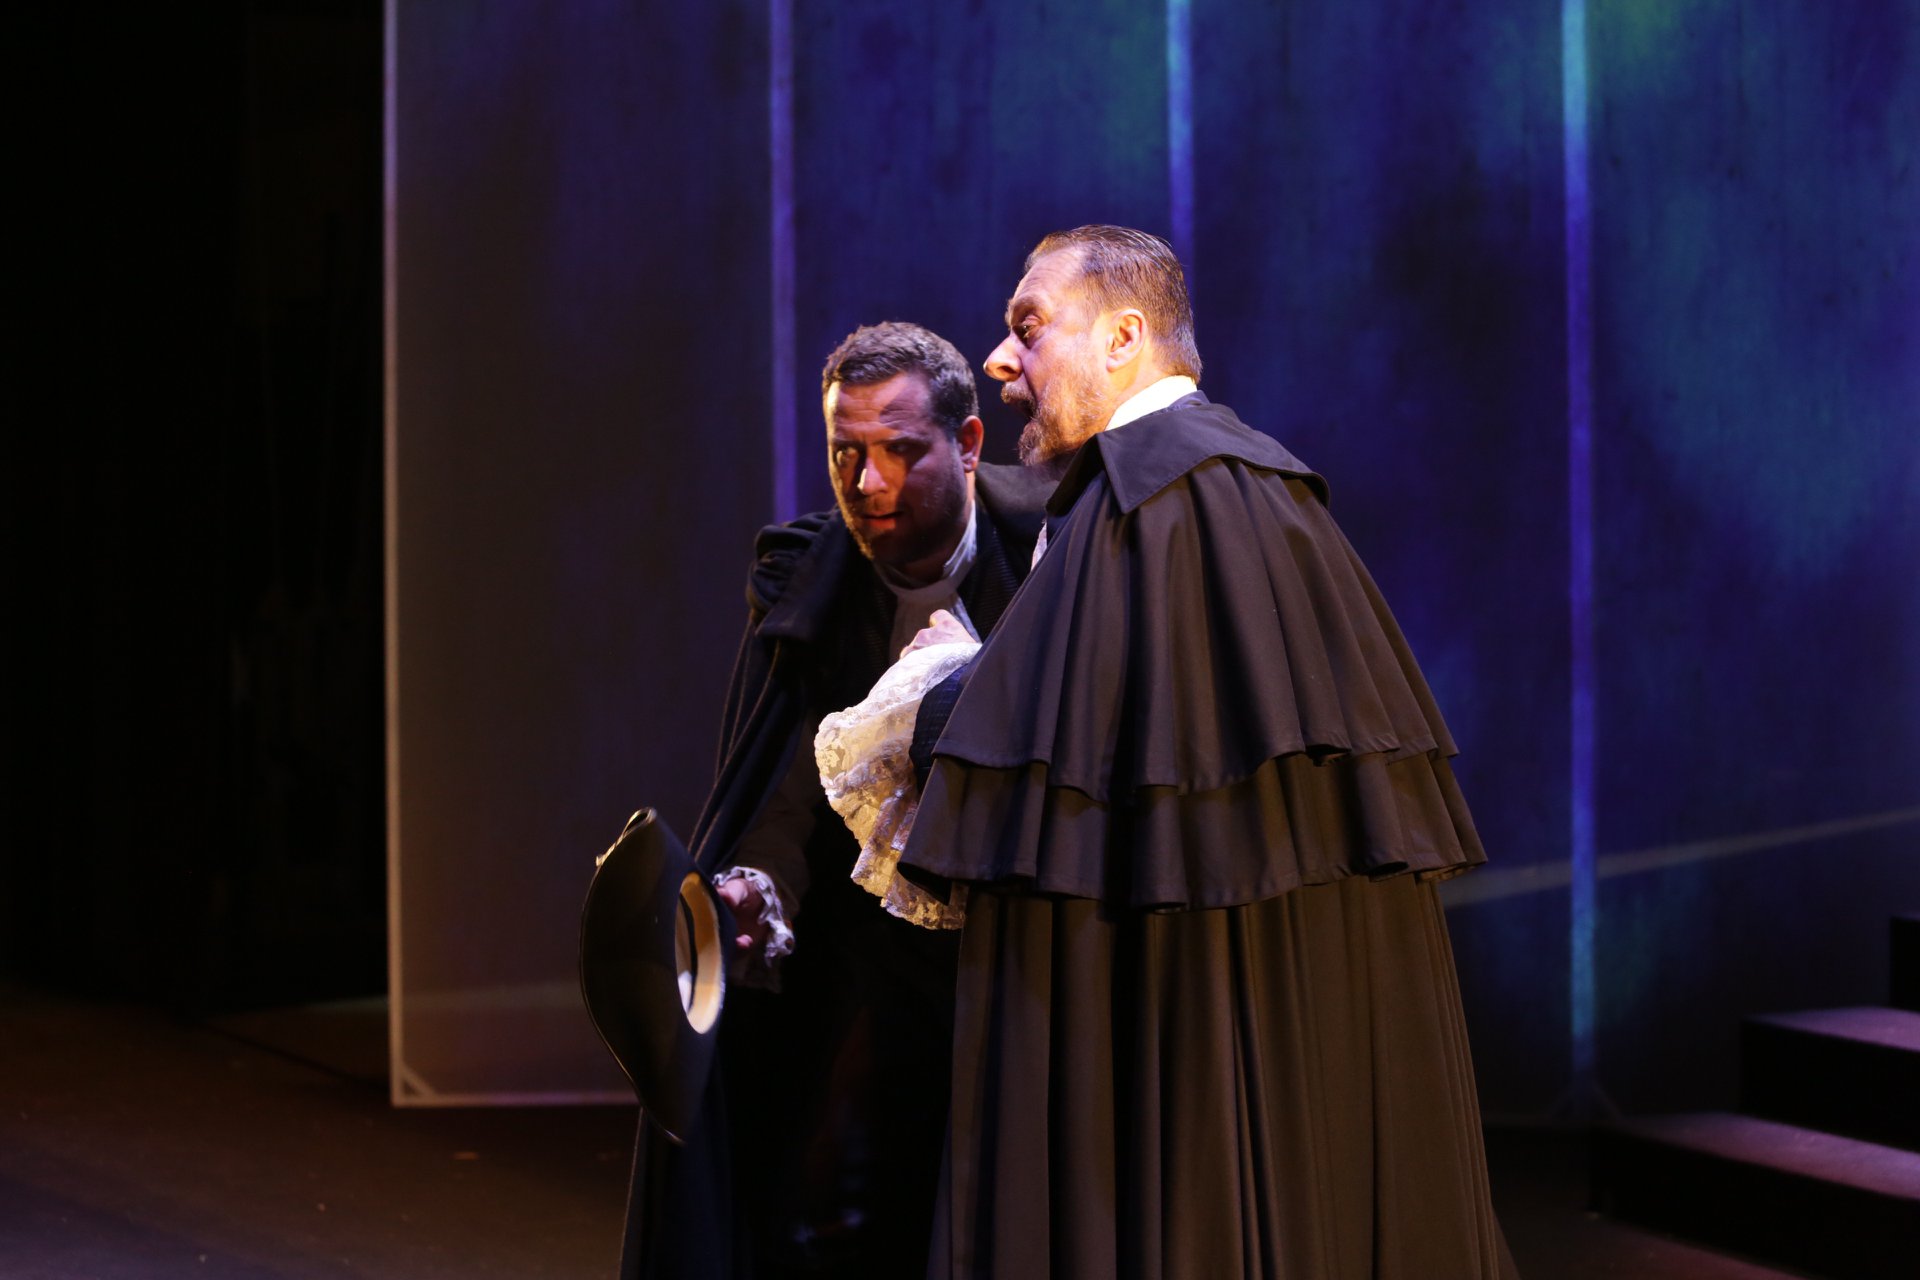 Domani e domenica “Don Giovanni” di Mozart al Cilea di Reggio Calabria con un cast stellare